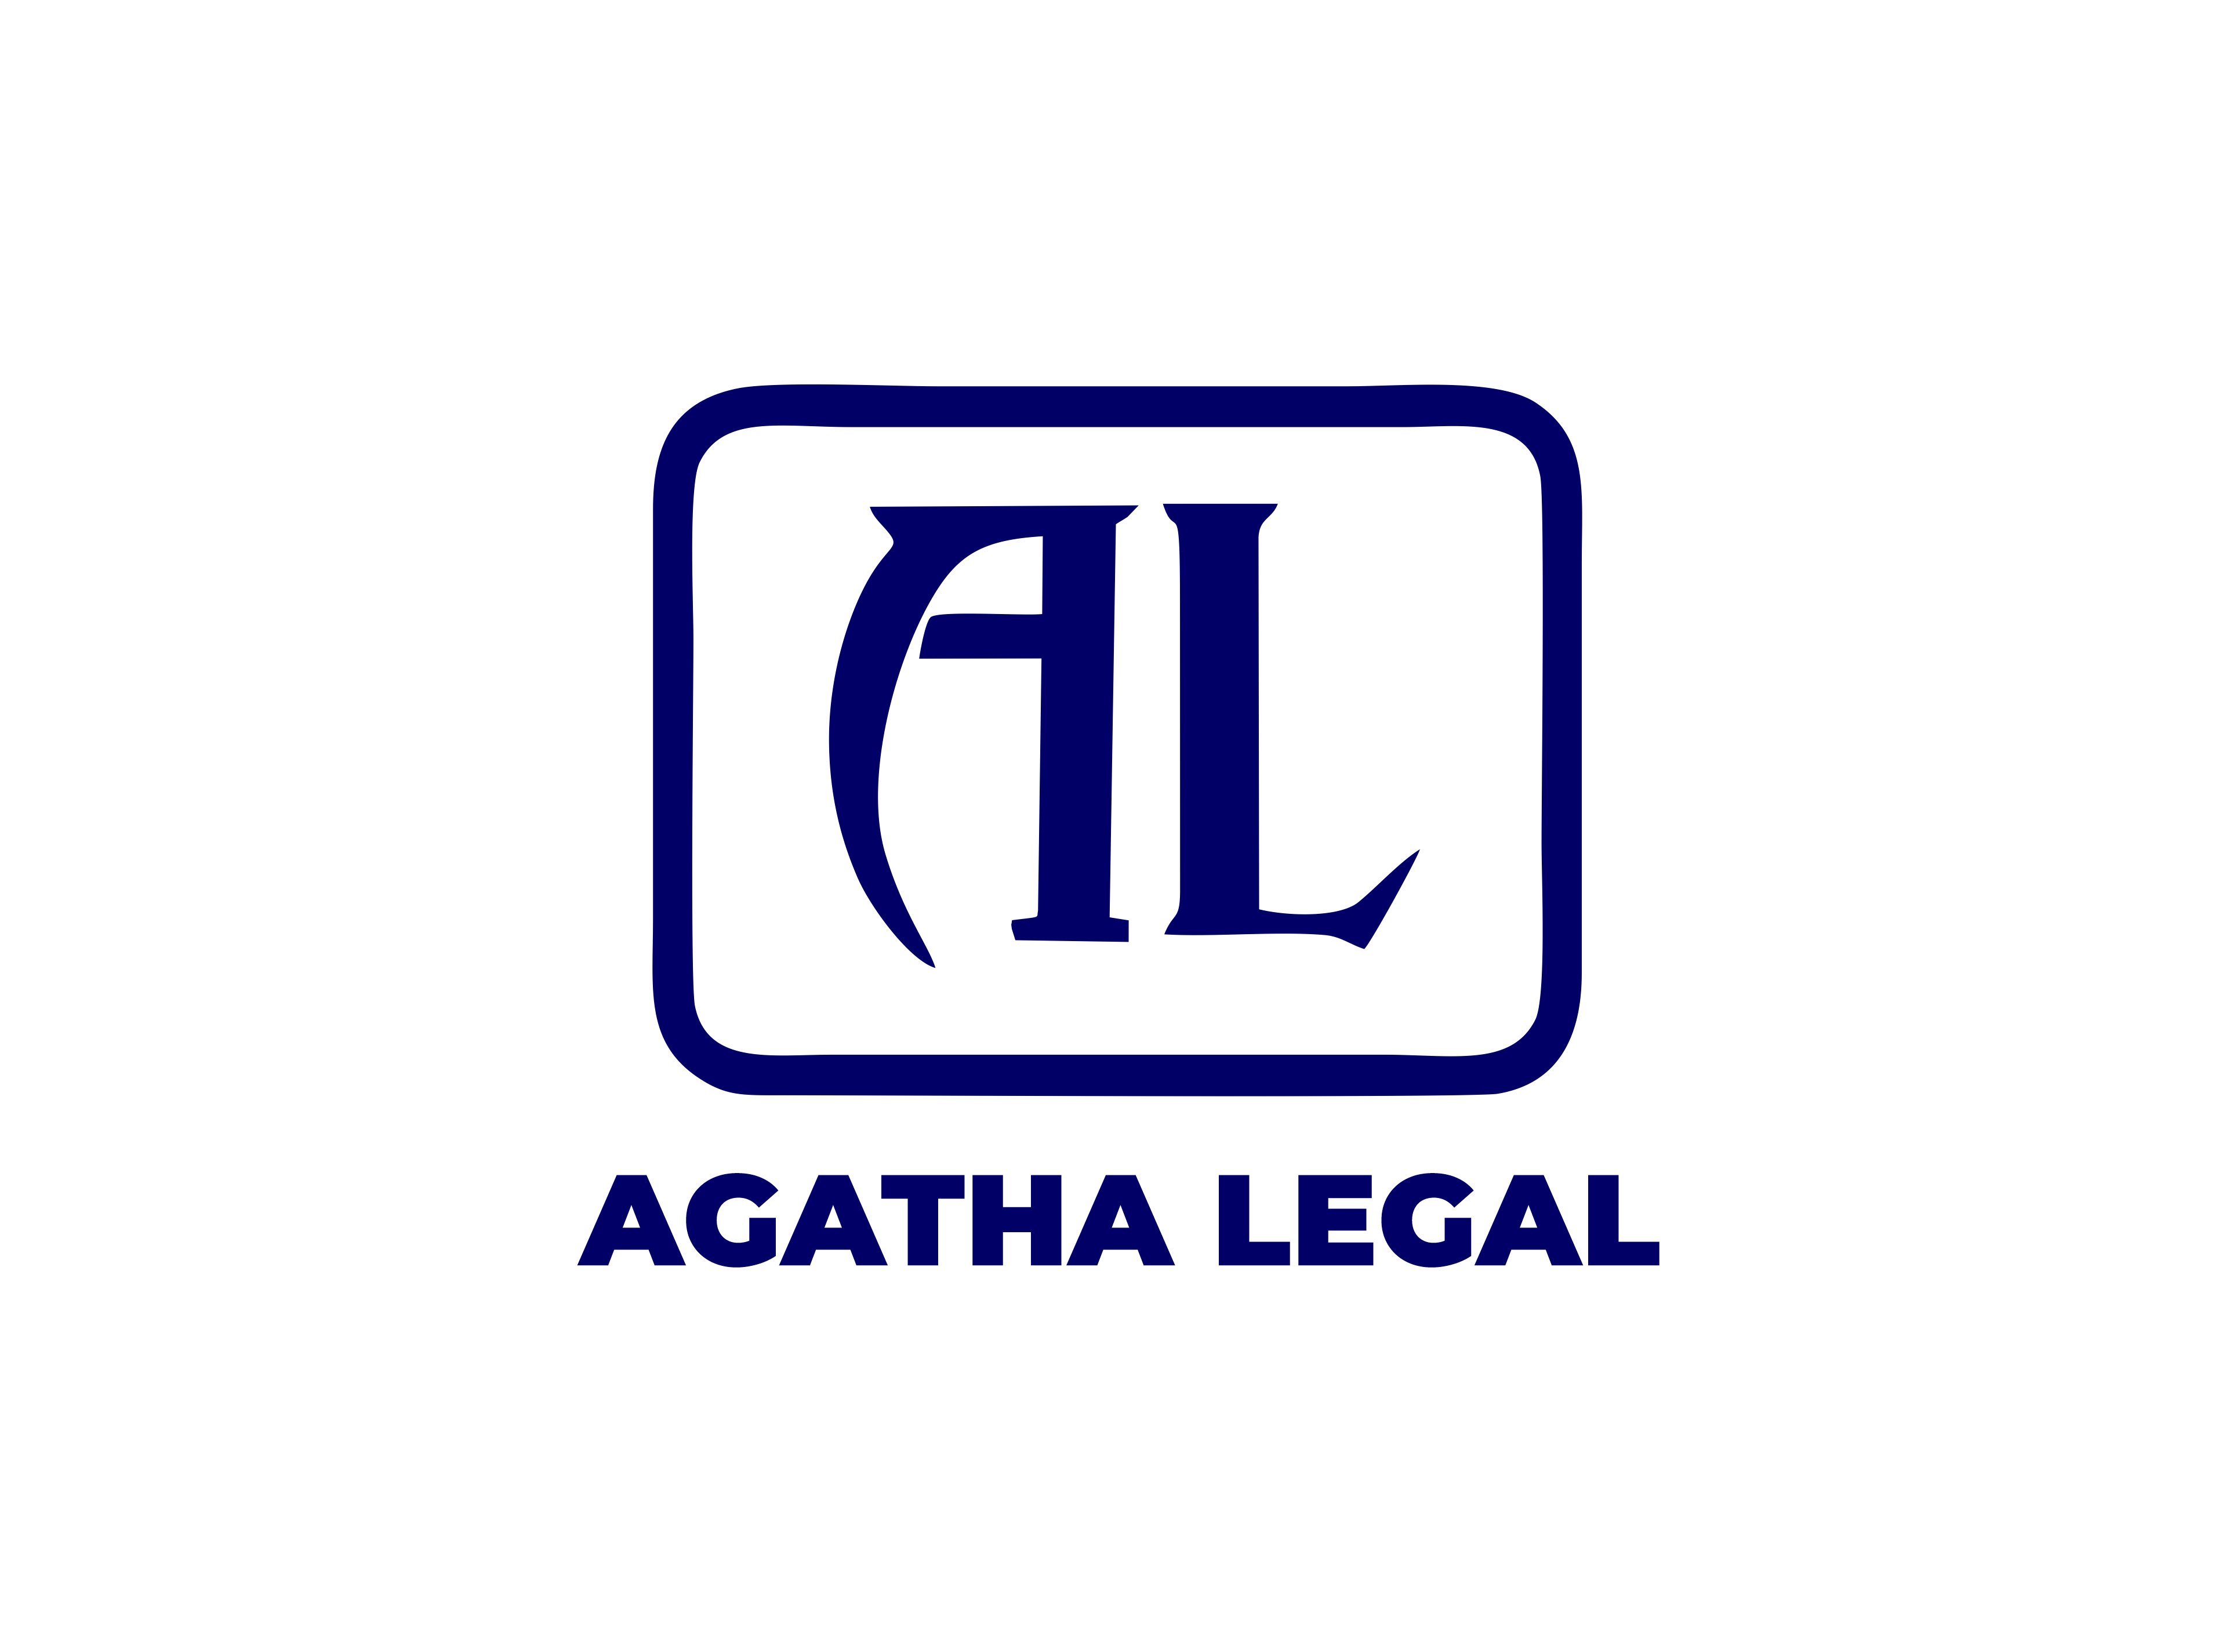 Agatha legal